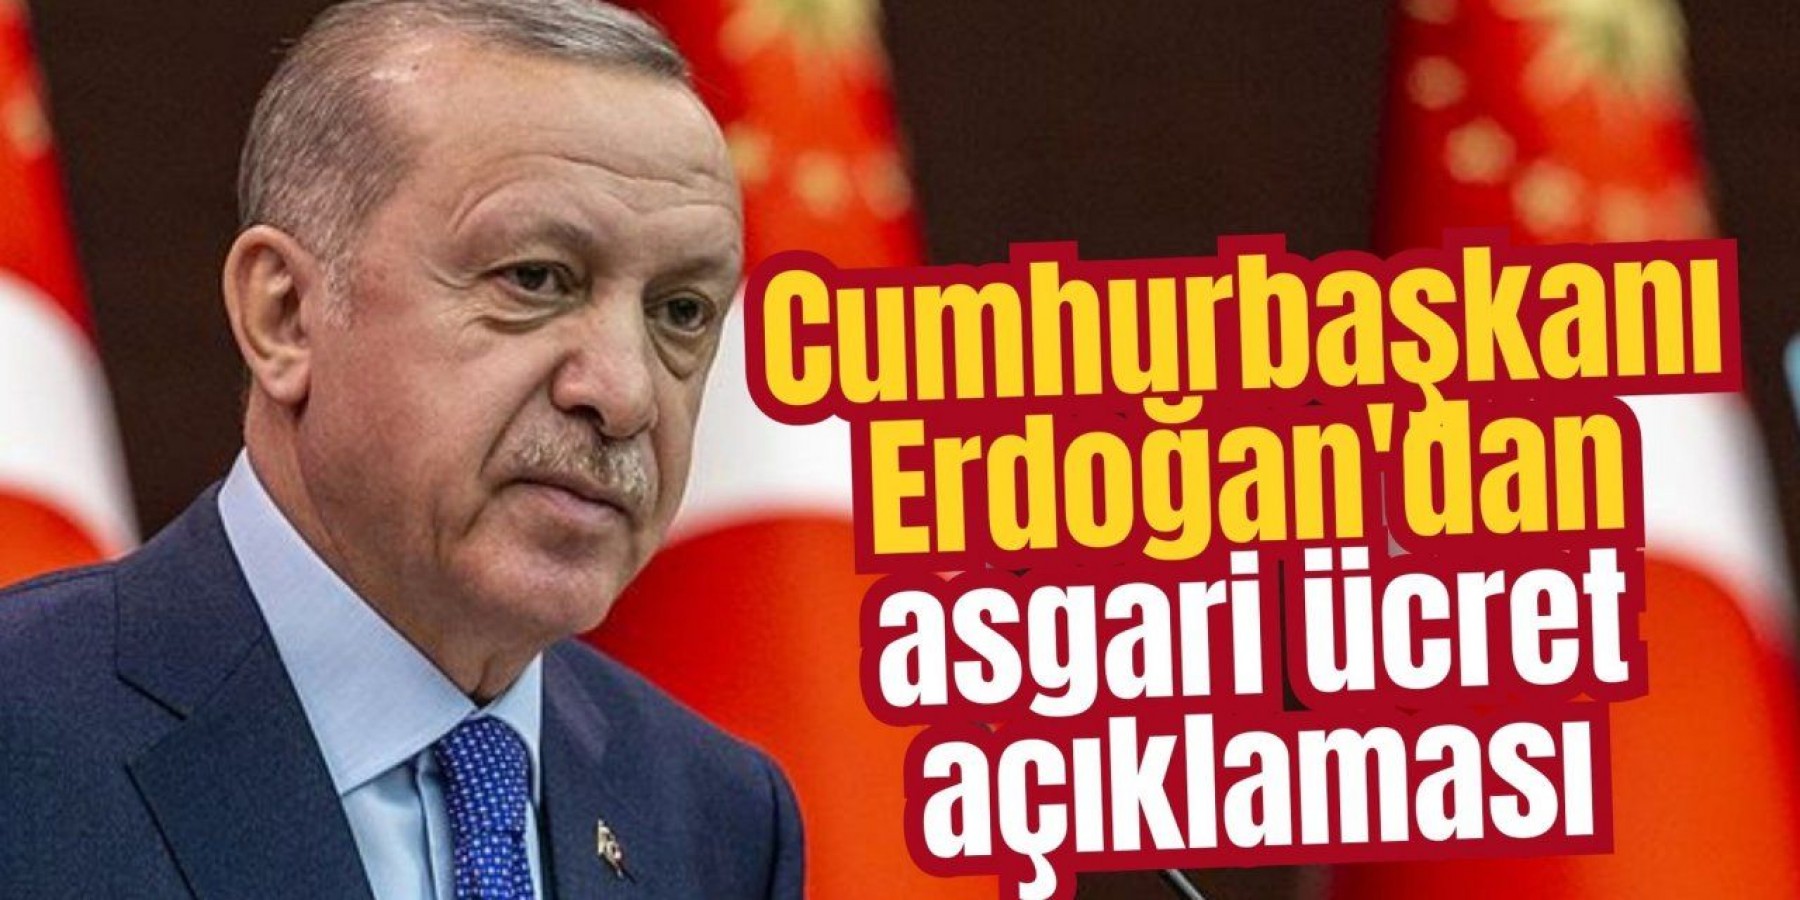 Erdoğan'dan asgari ücret yorumu: “Tek zamla…”;